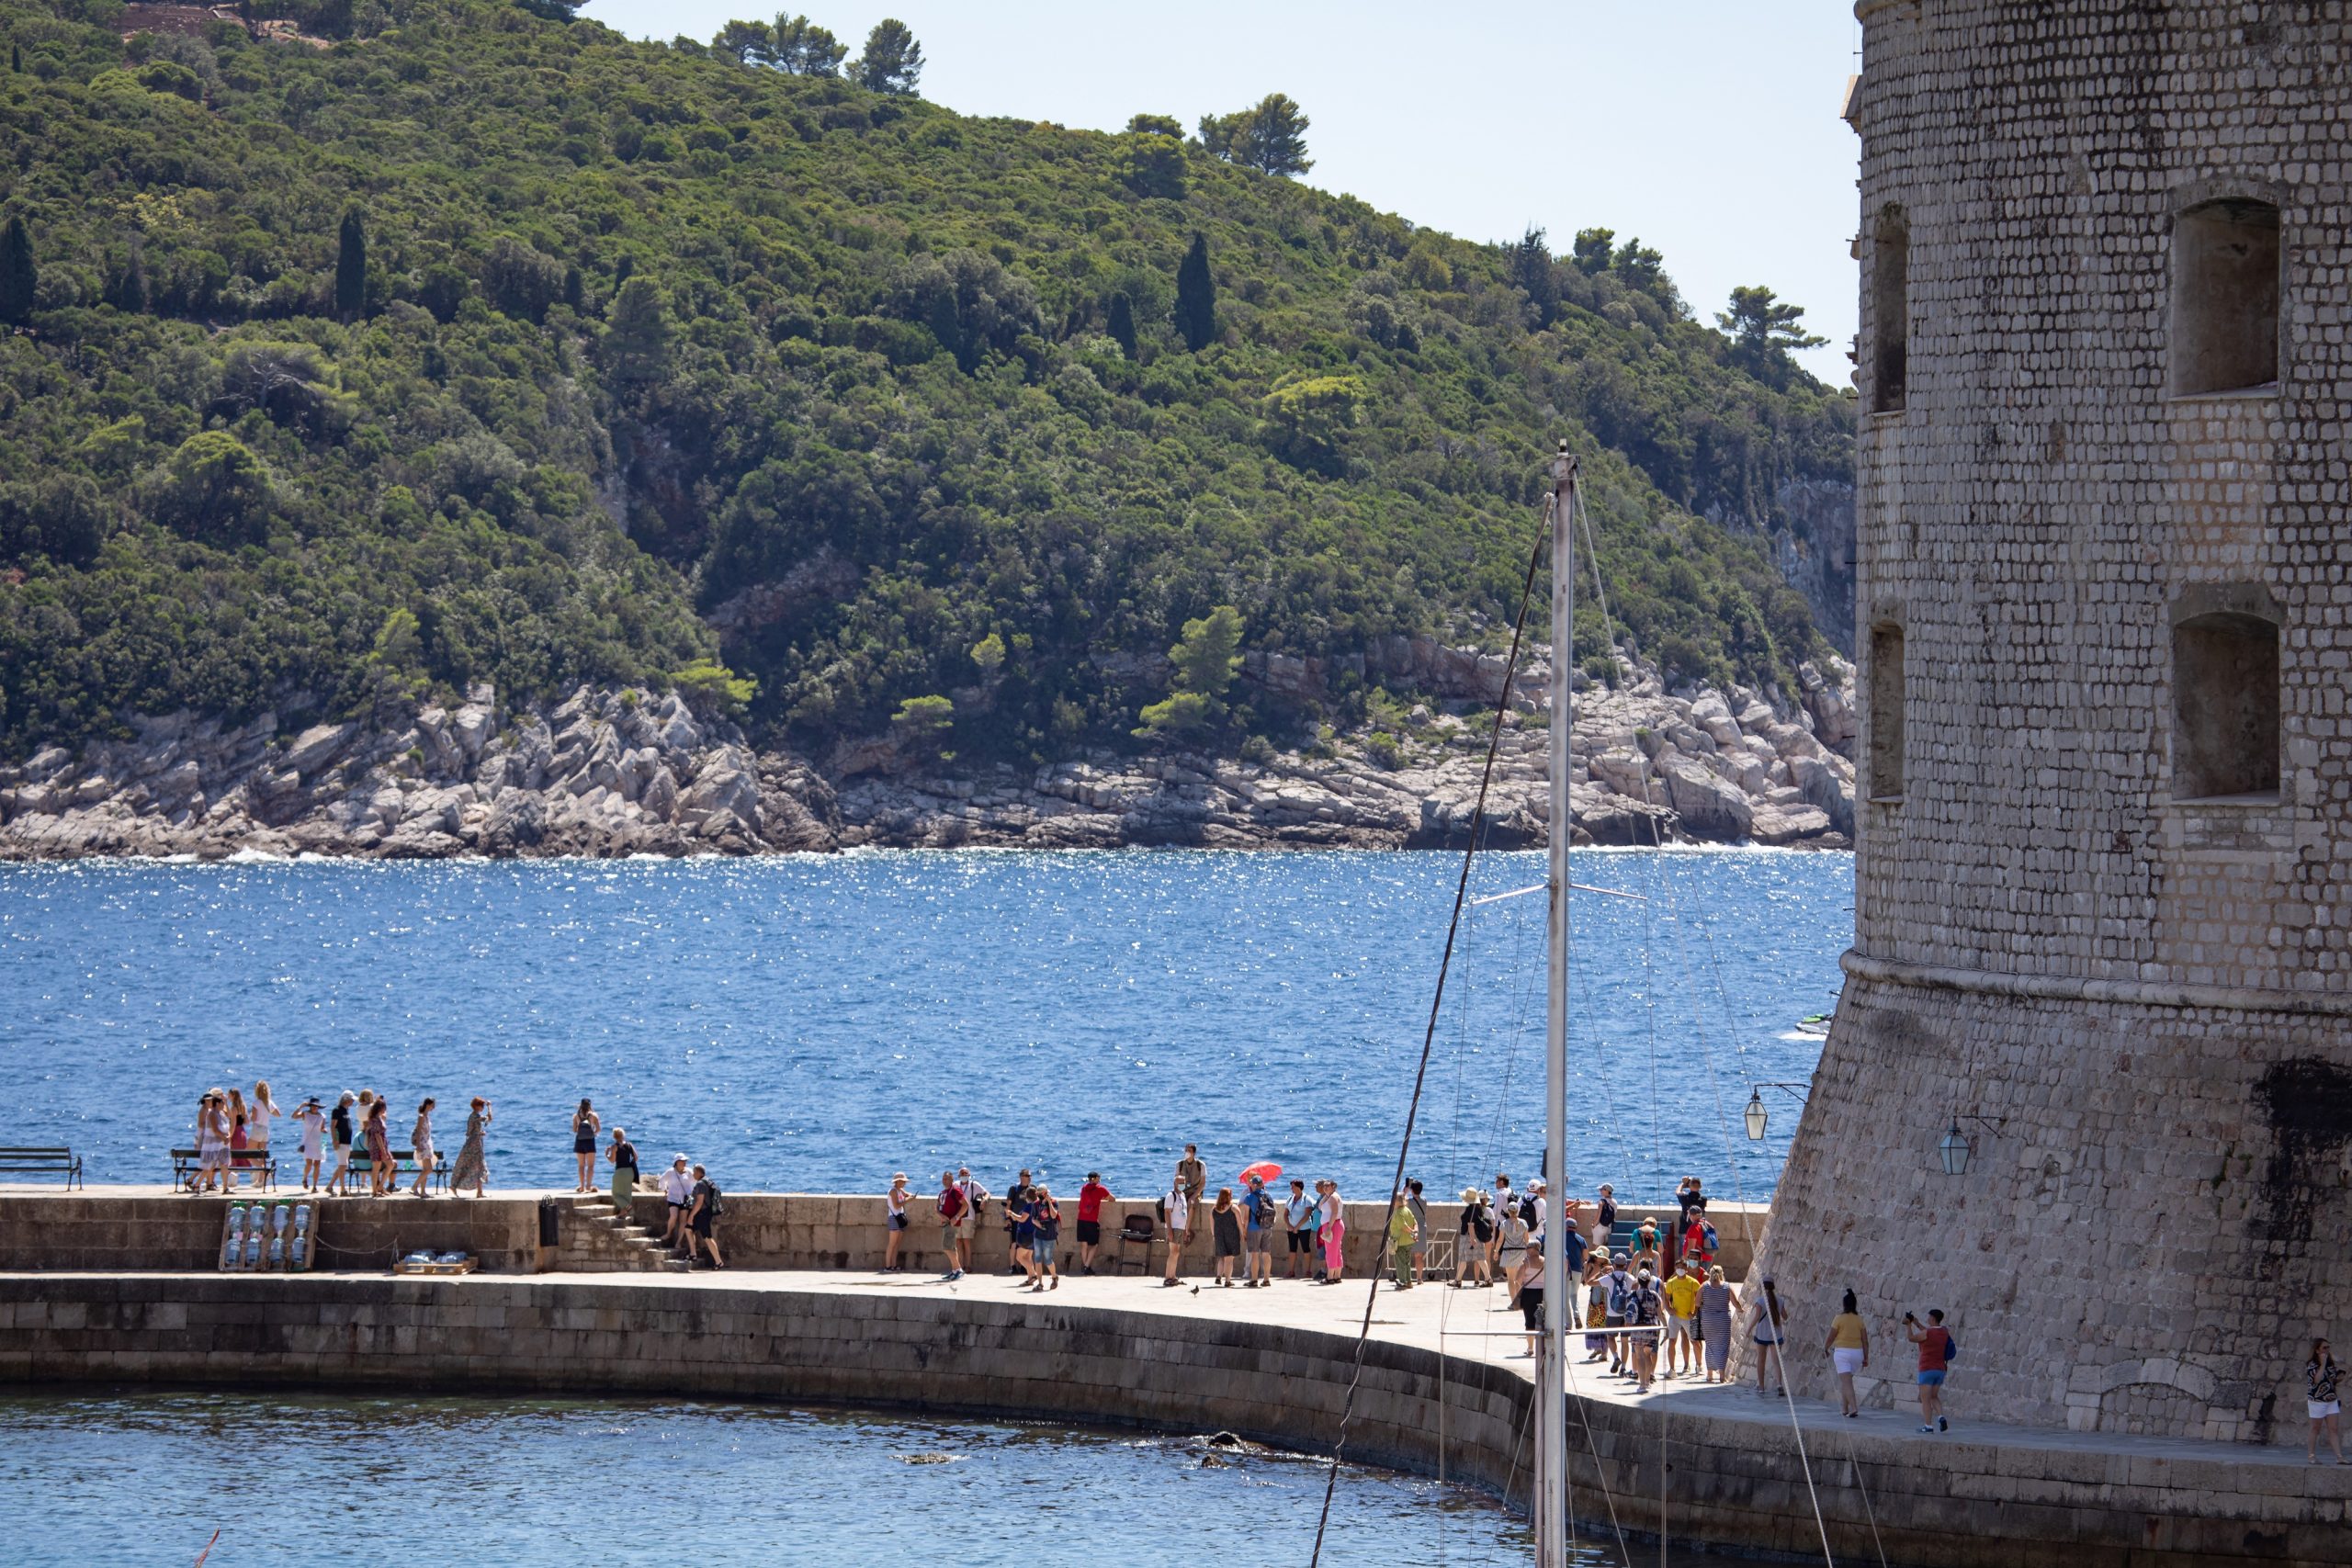 19.08.2020., Stara gradska jezgra, Dubrovnik - Gradski kadrovi. 
Photo: Grgo Jelavic/PIXSELL